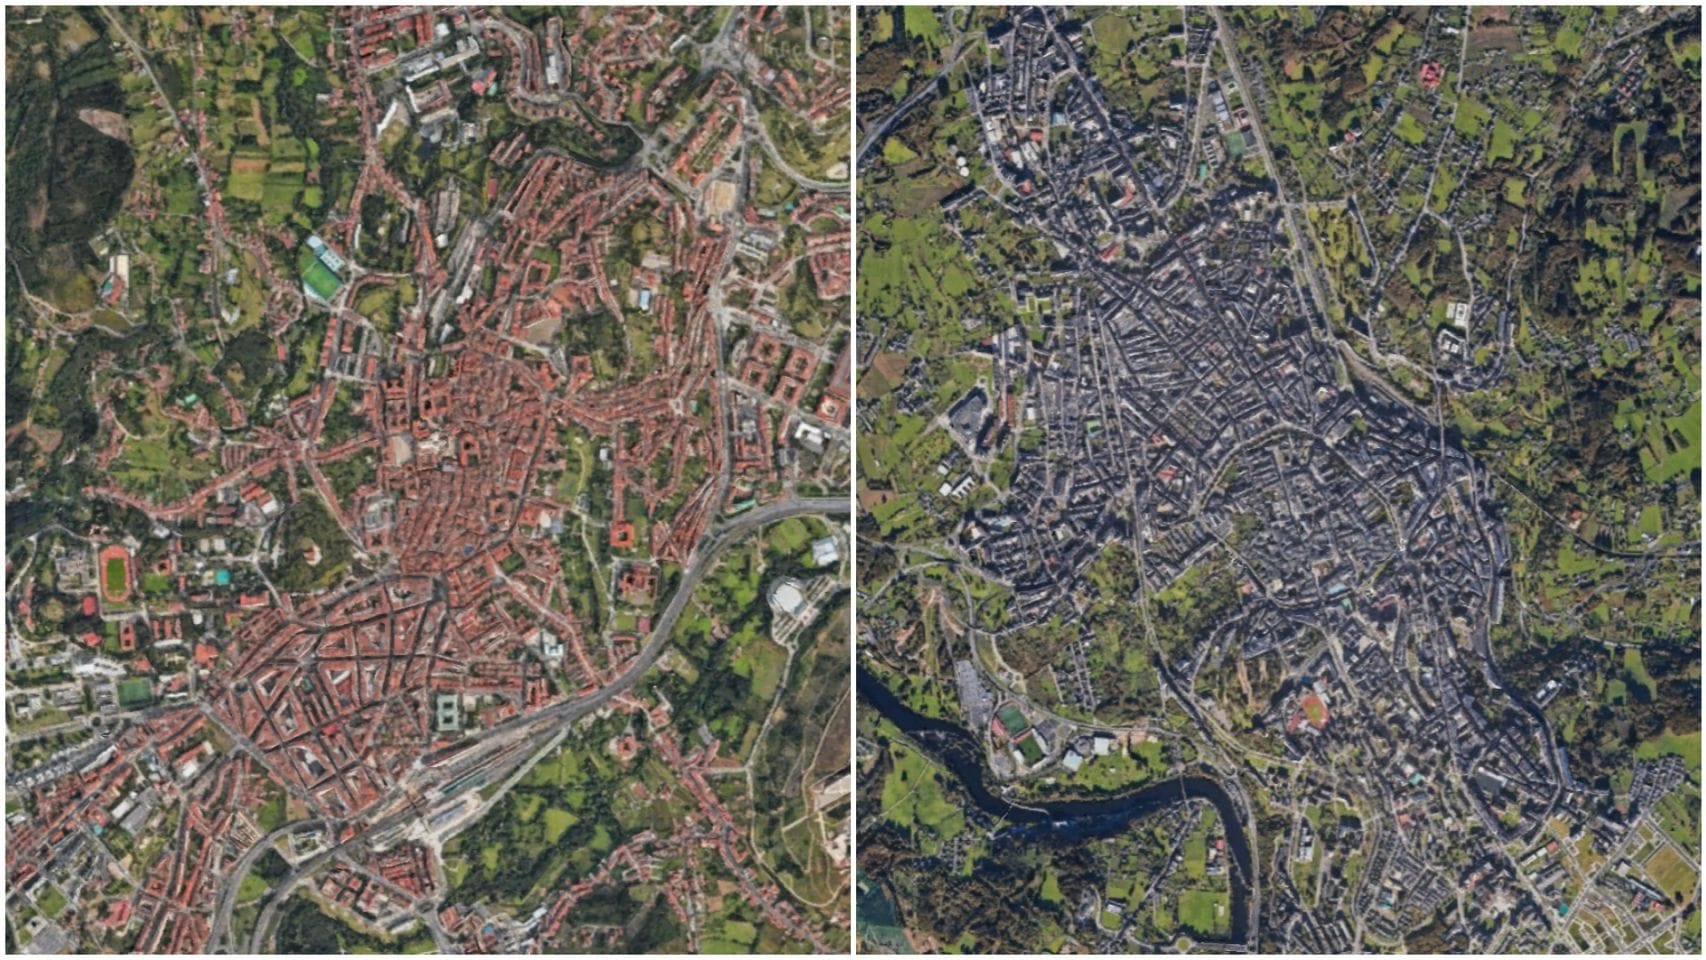 Vista aérea de Santiago de Compostela (izquierda) y Lugo (derecha)